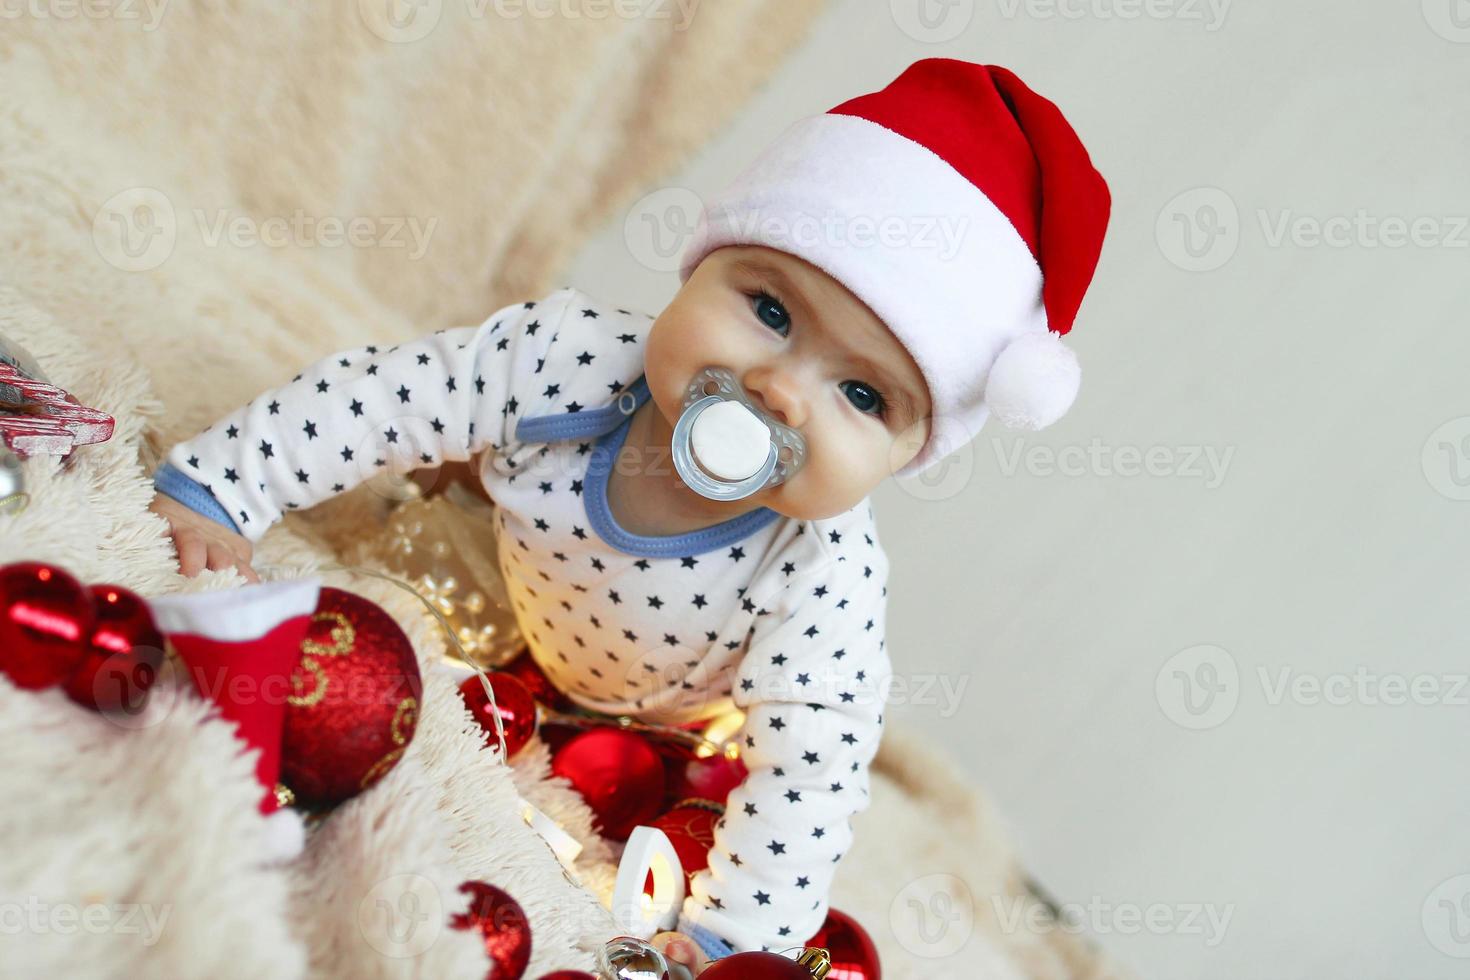 linda niñita con sombrero rojo de santa claus con chupete está jugando con adornos navideños rojos y blancos y luces navideñas en una manta beige. foto